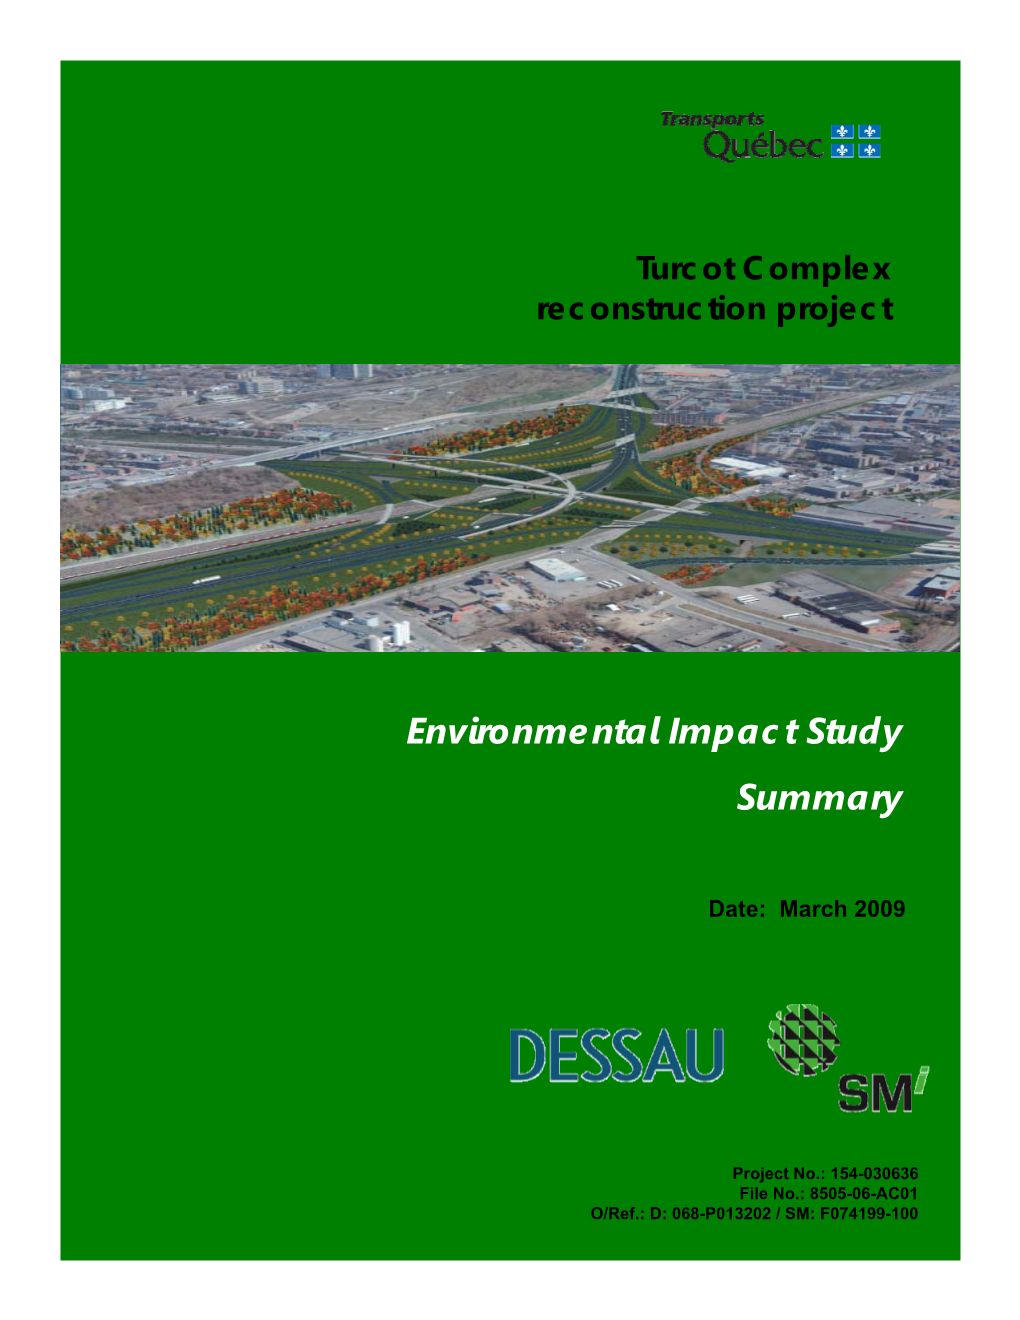 Environmental Impact Study Summary